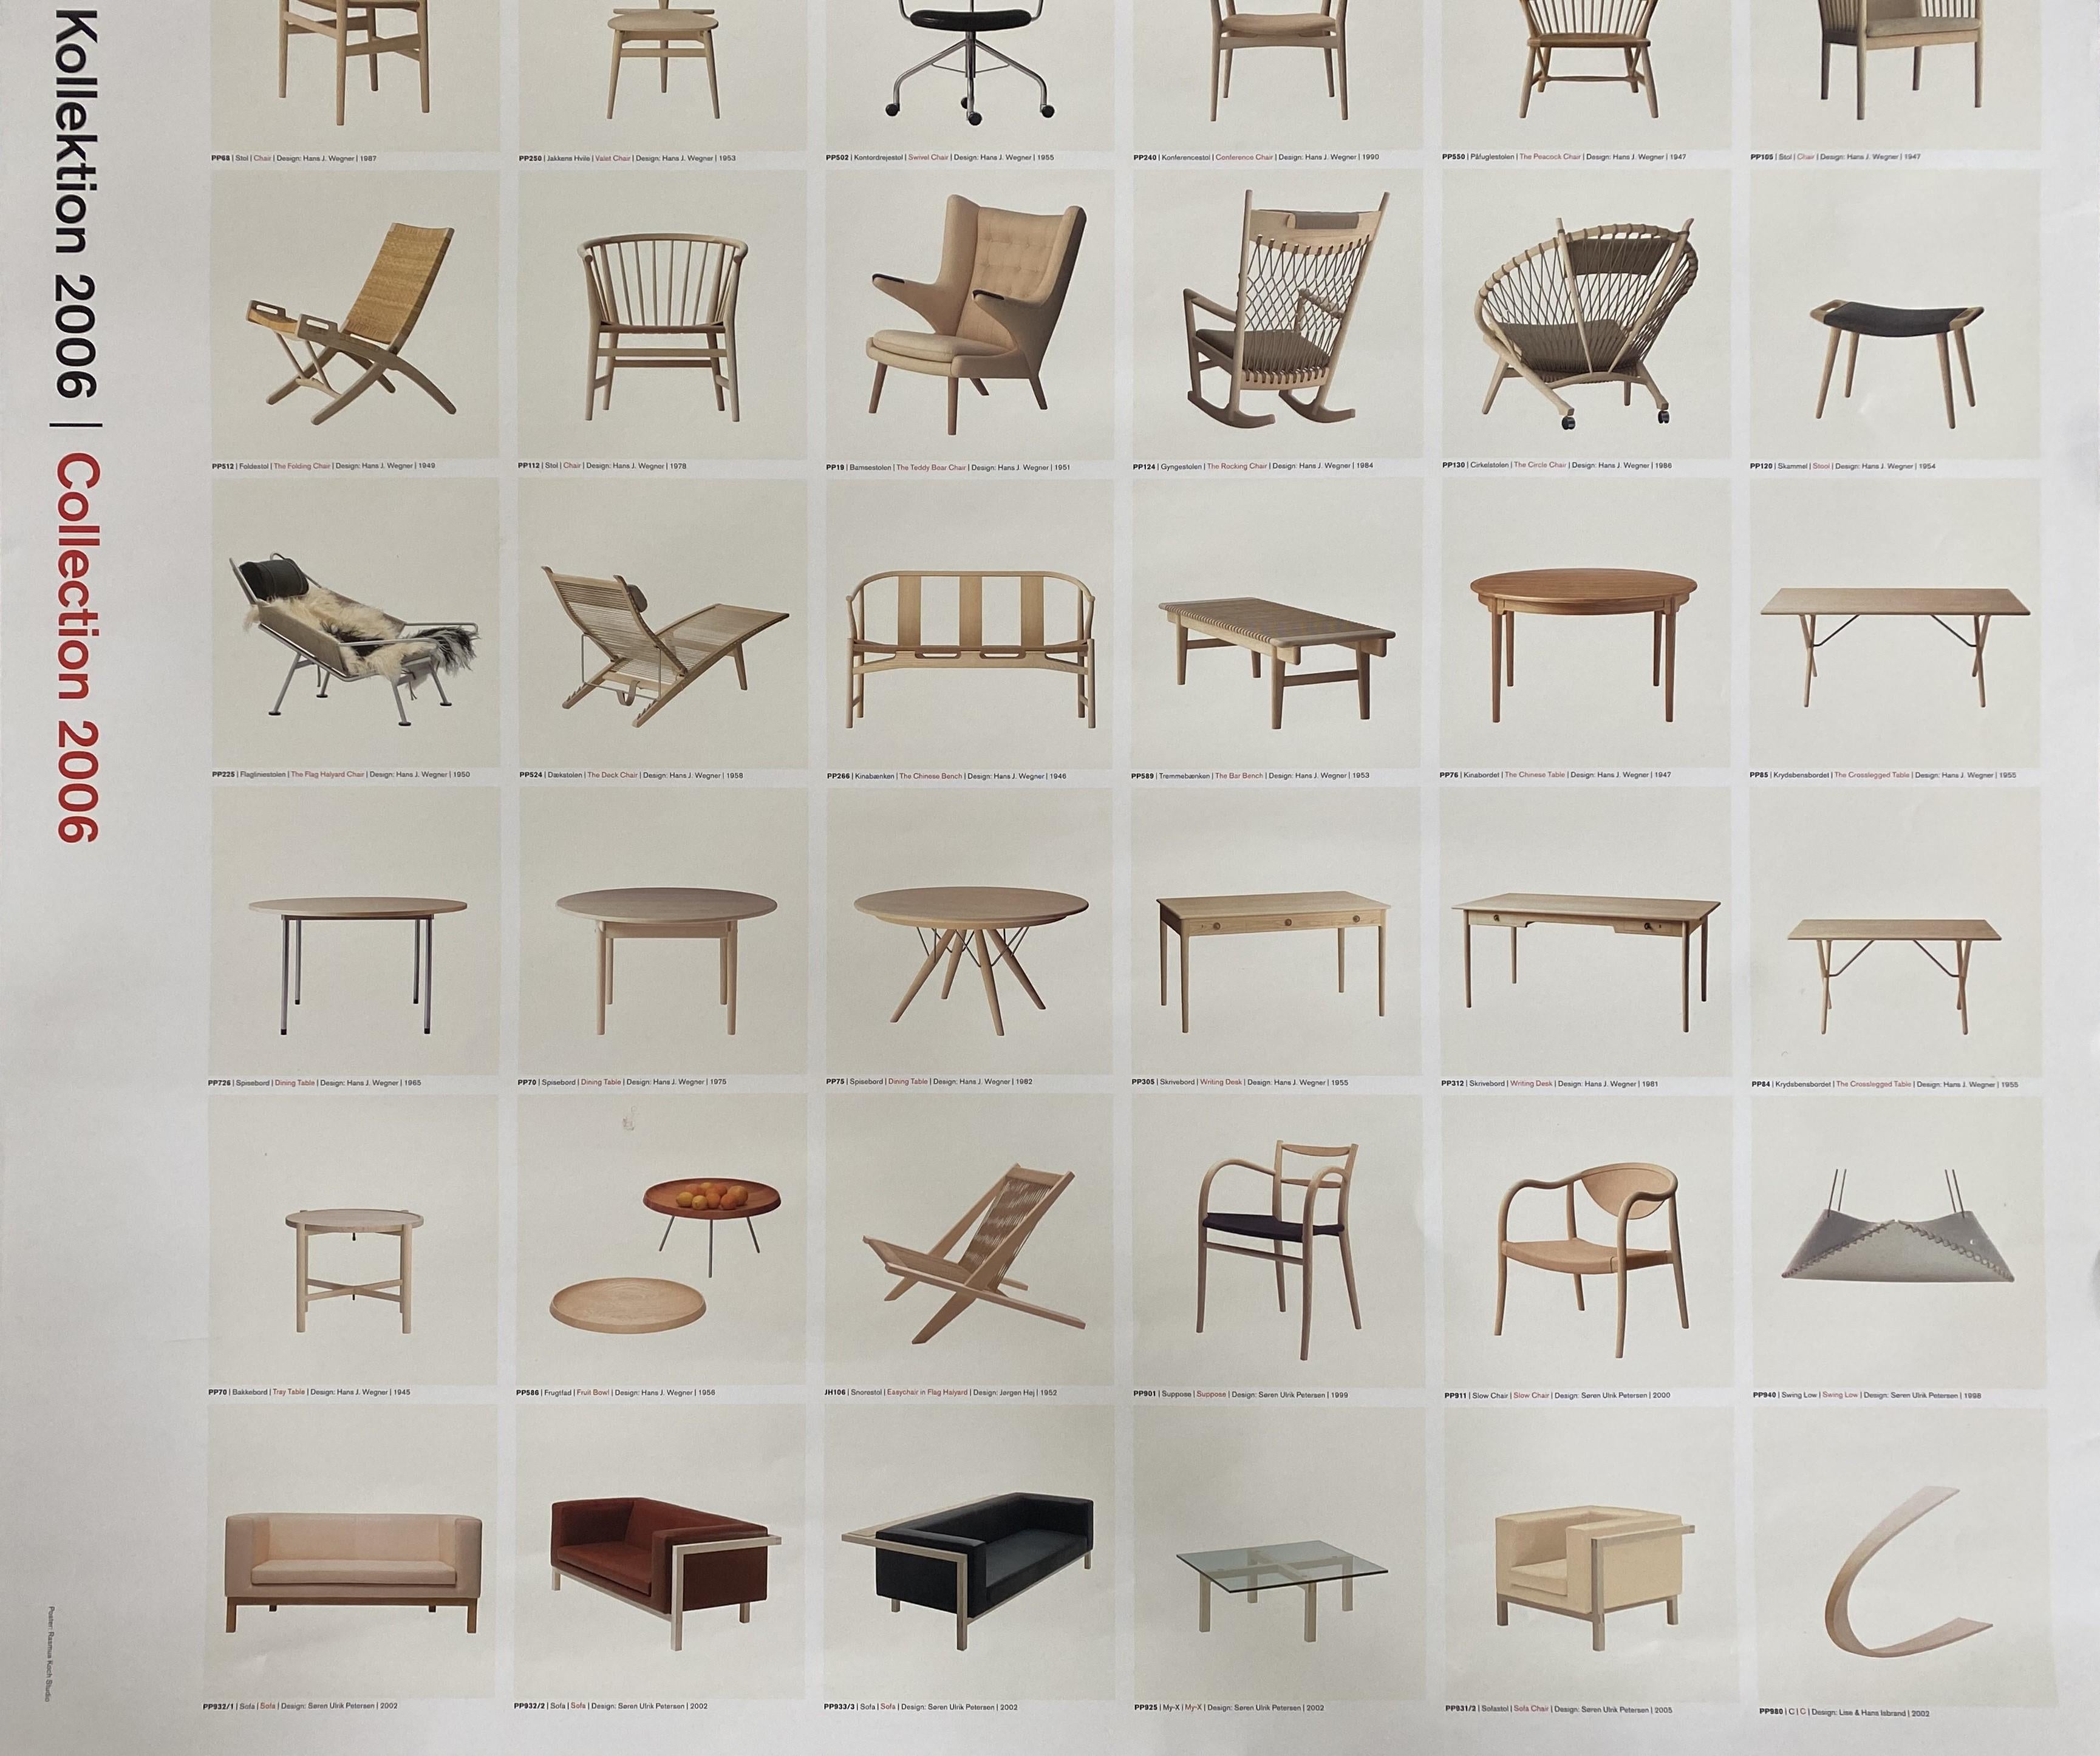 Voici une affiche d'exposition vintage très rare et désirable présentant une représentation très élégante du meubleur du designer danois Hans J. Wegner.

Quelques modèles présentés :
Chaise chinoise, PP66, 1945
La chaise, PP56, 1950
La chaise en